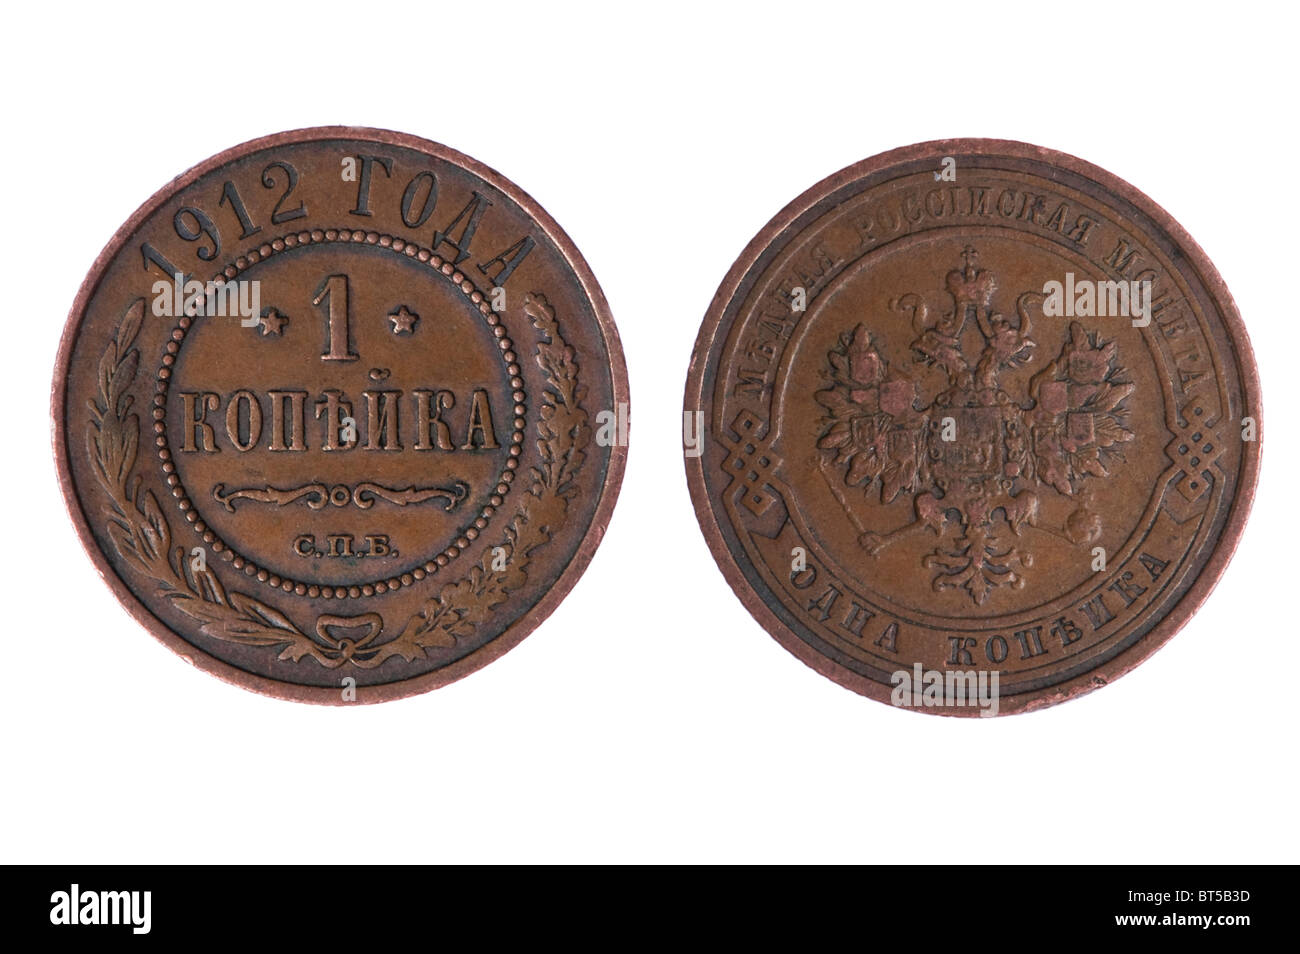 Objekt auf weiß - Russland Münzen aus der Kaiserzeit mit Rost hautnah Stockfoto